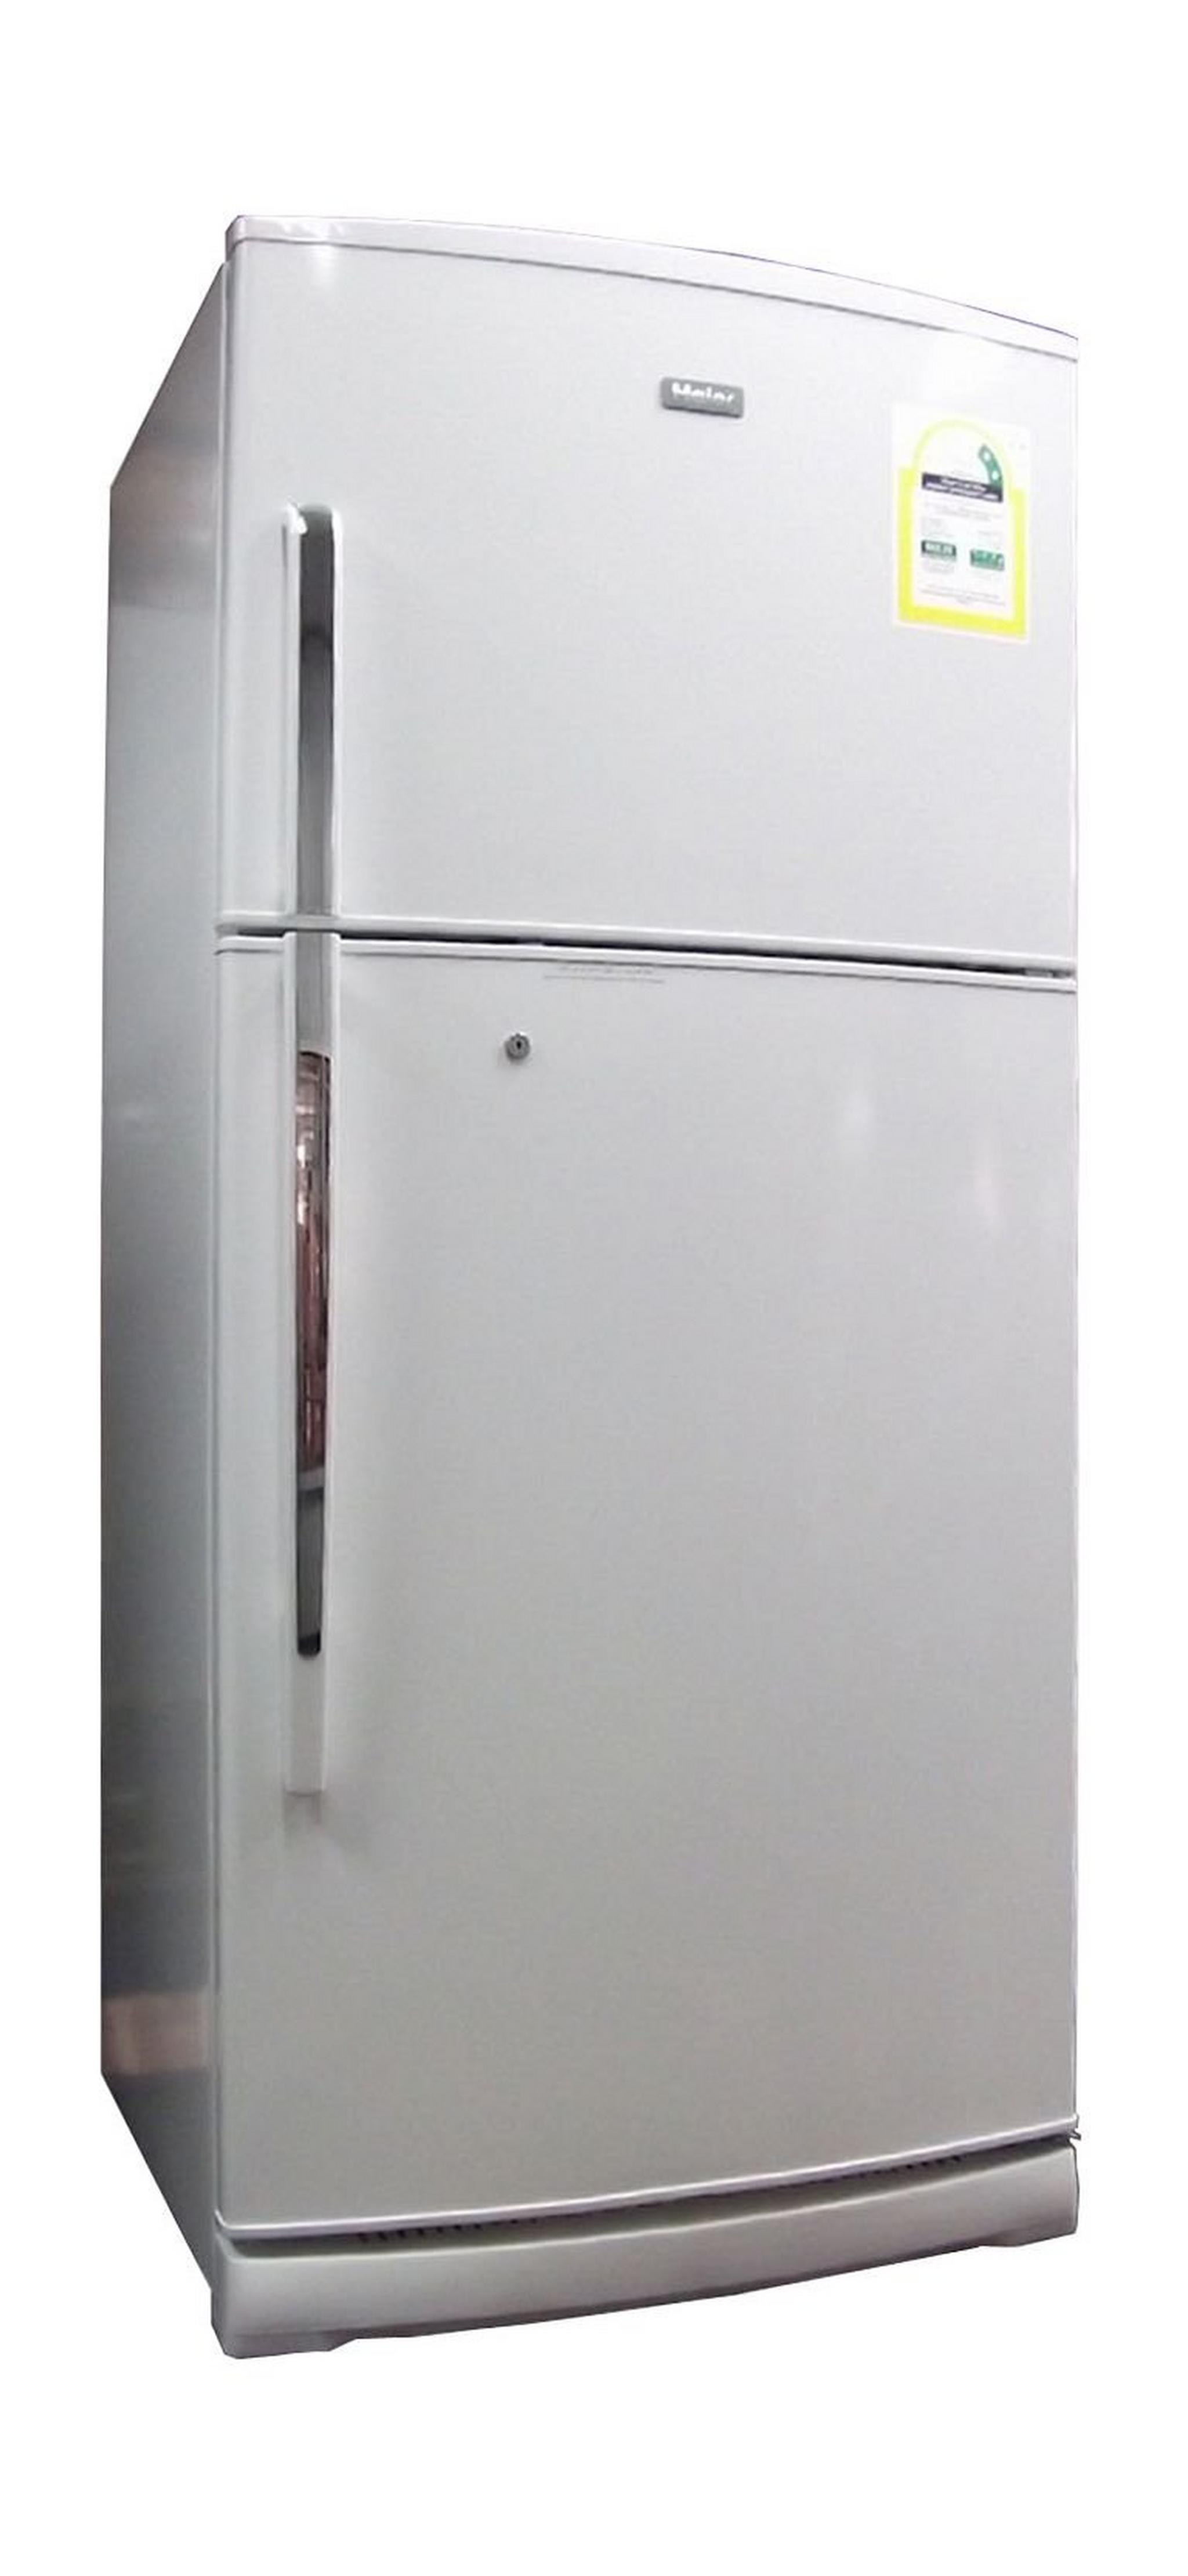 Haier 15.7Cft. Top Freezer Refrigerator (HR-858FKNWW) - White